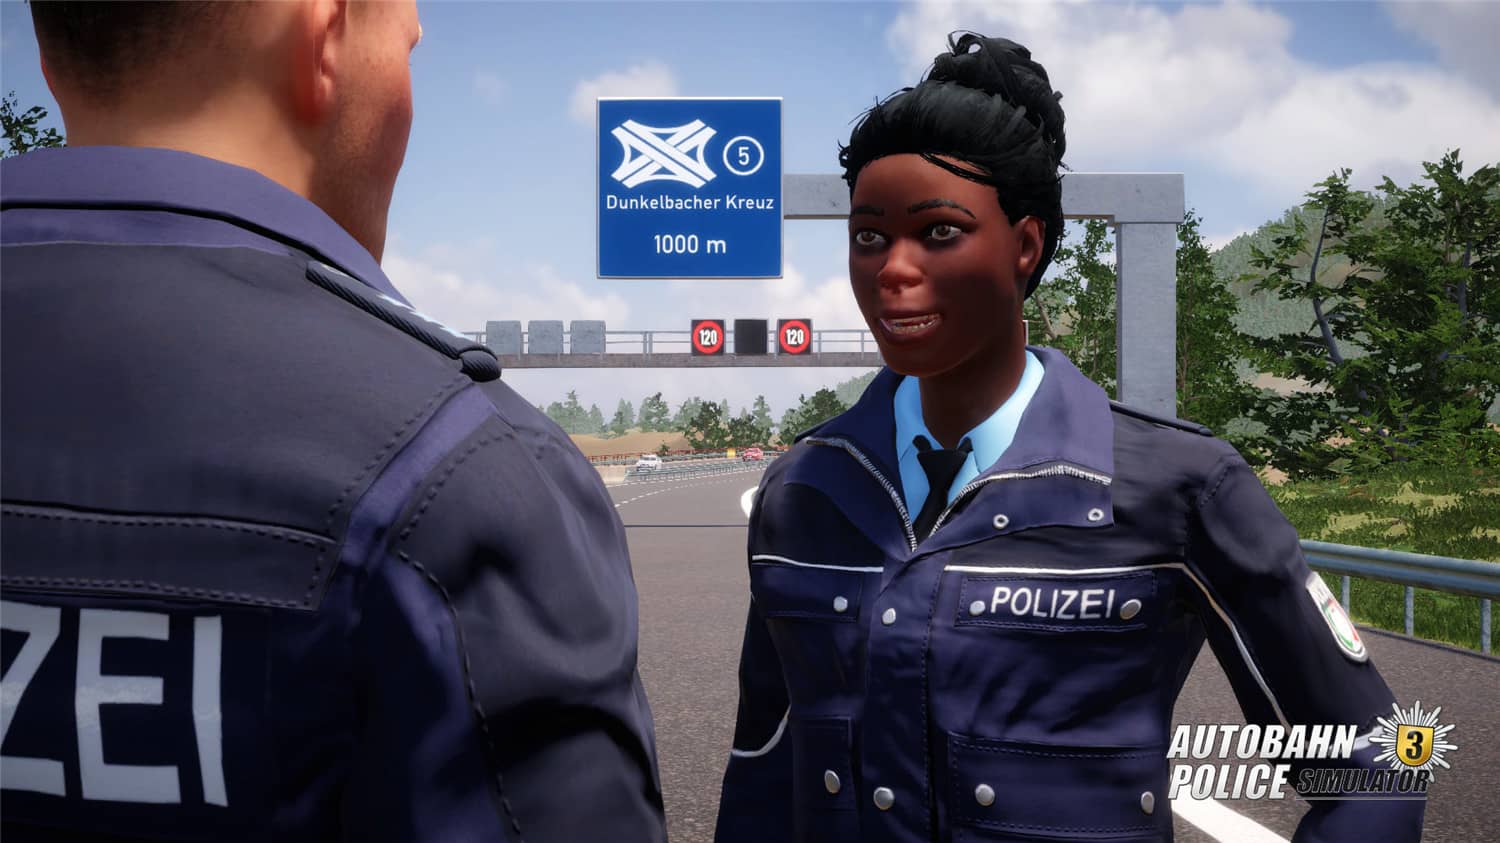 高速公路警察模拟3/Autobahn Police Simulator 3-1